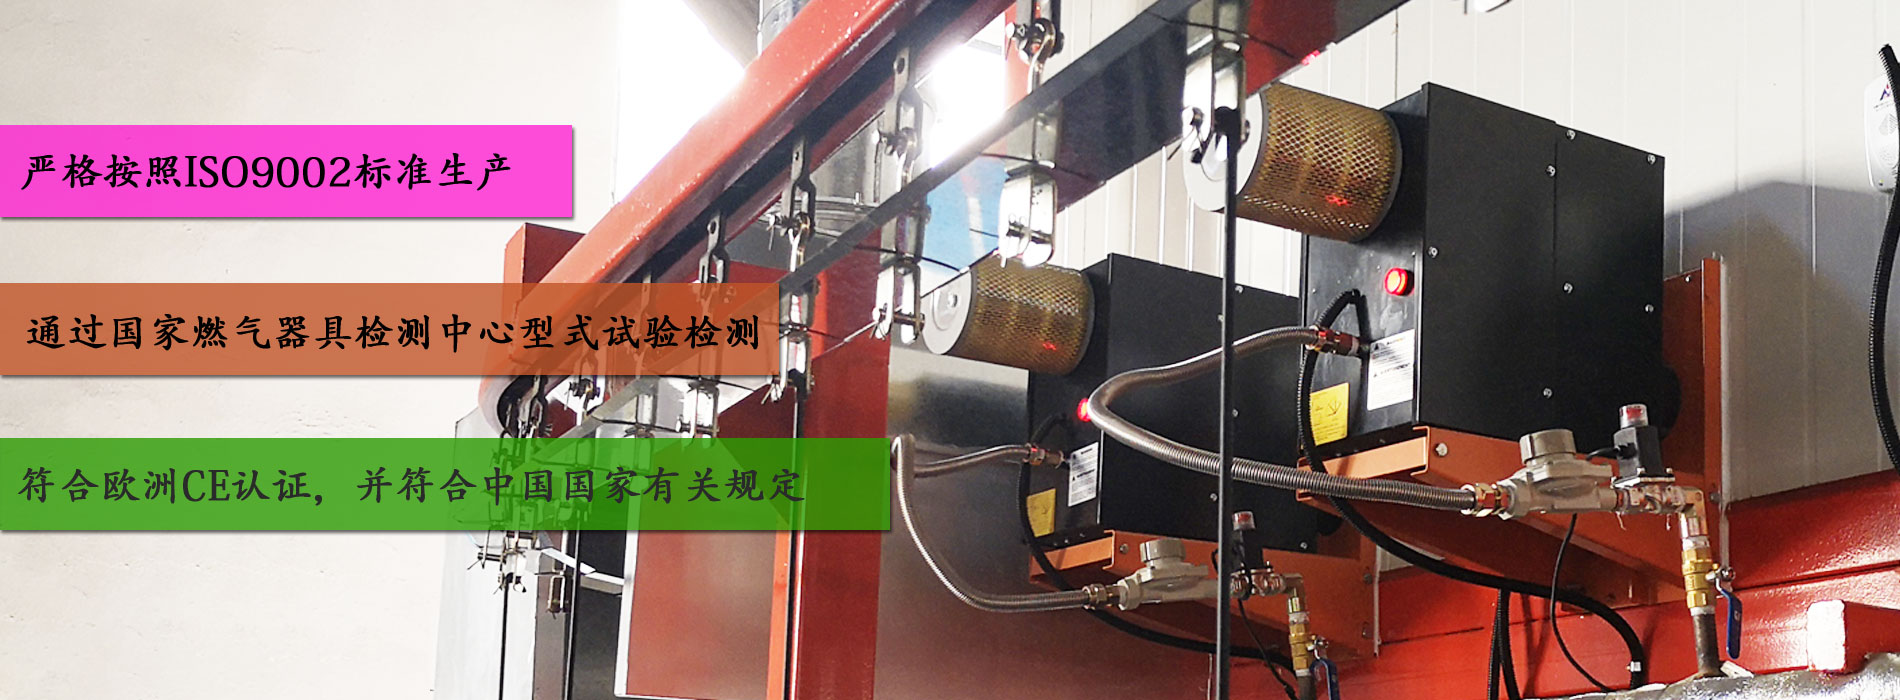 红外线辐射燃烧机通过国家燃气器具检测中心型式试验检测